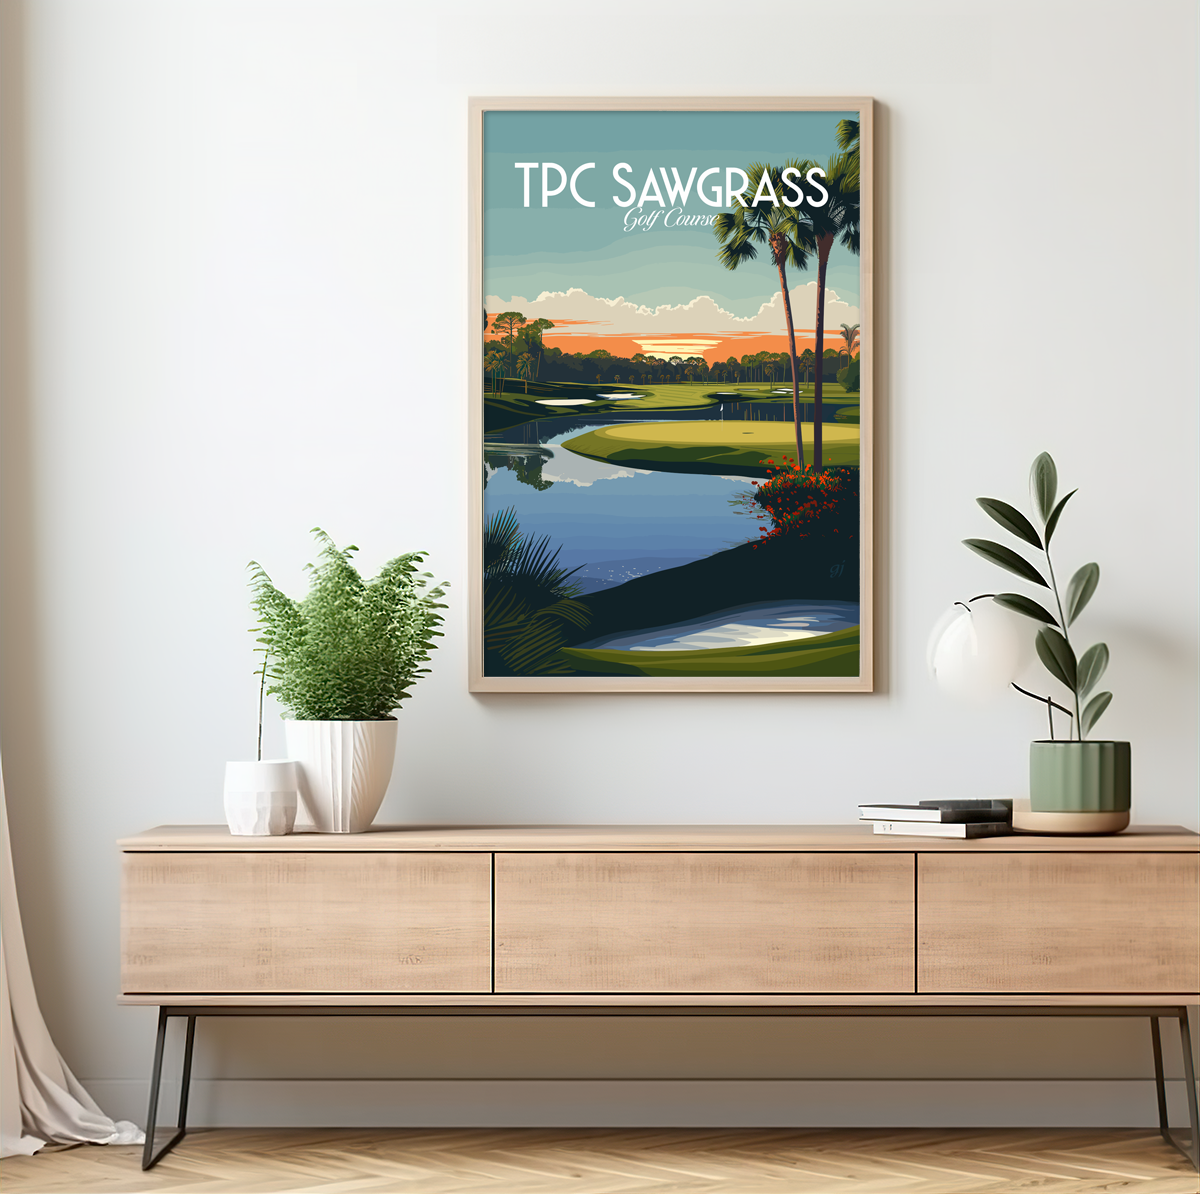 TPC Sawgrass poster by bon voyage design